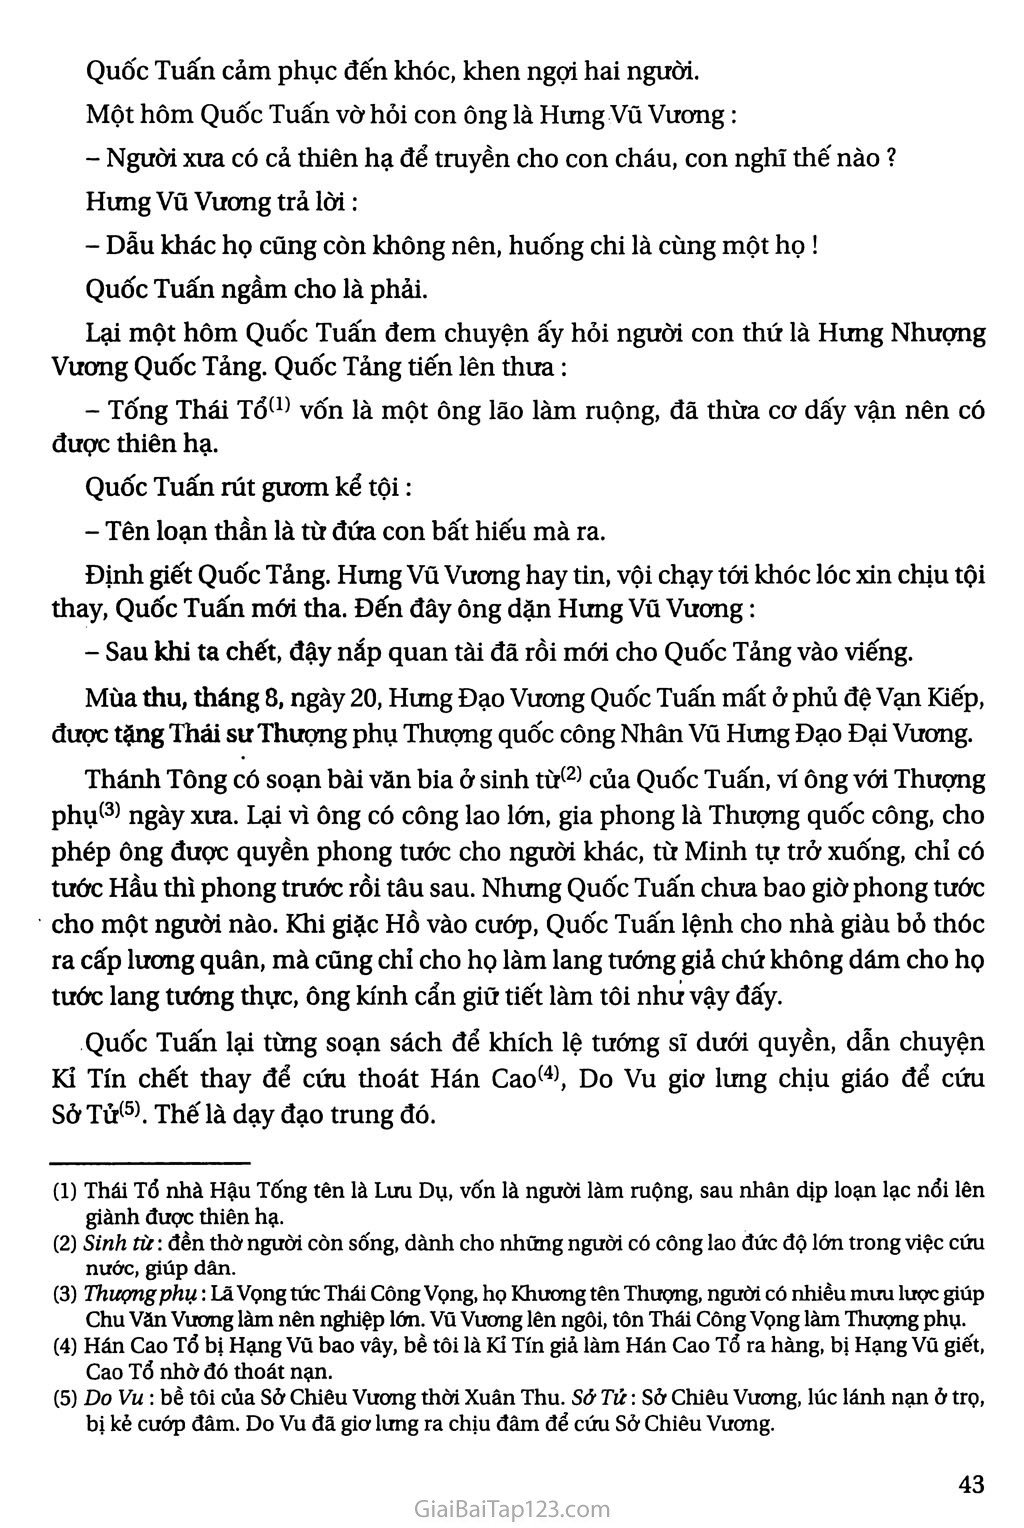 Hưng Đạo Đại Vương Trần Quốc Tuấn (trích Đại Việt sử kí toàn thư) trang 3